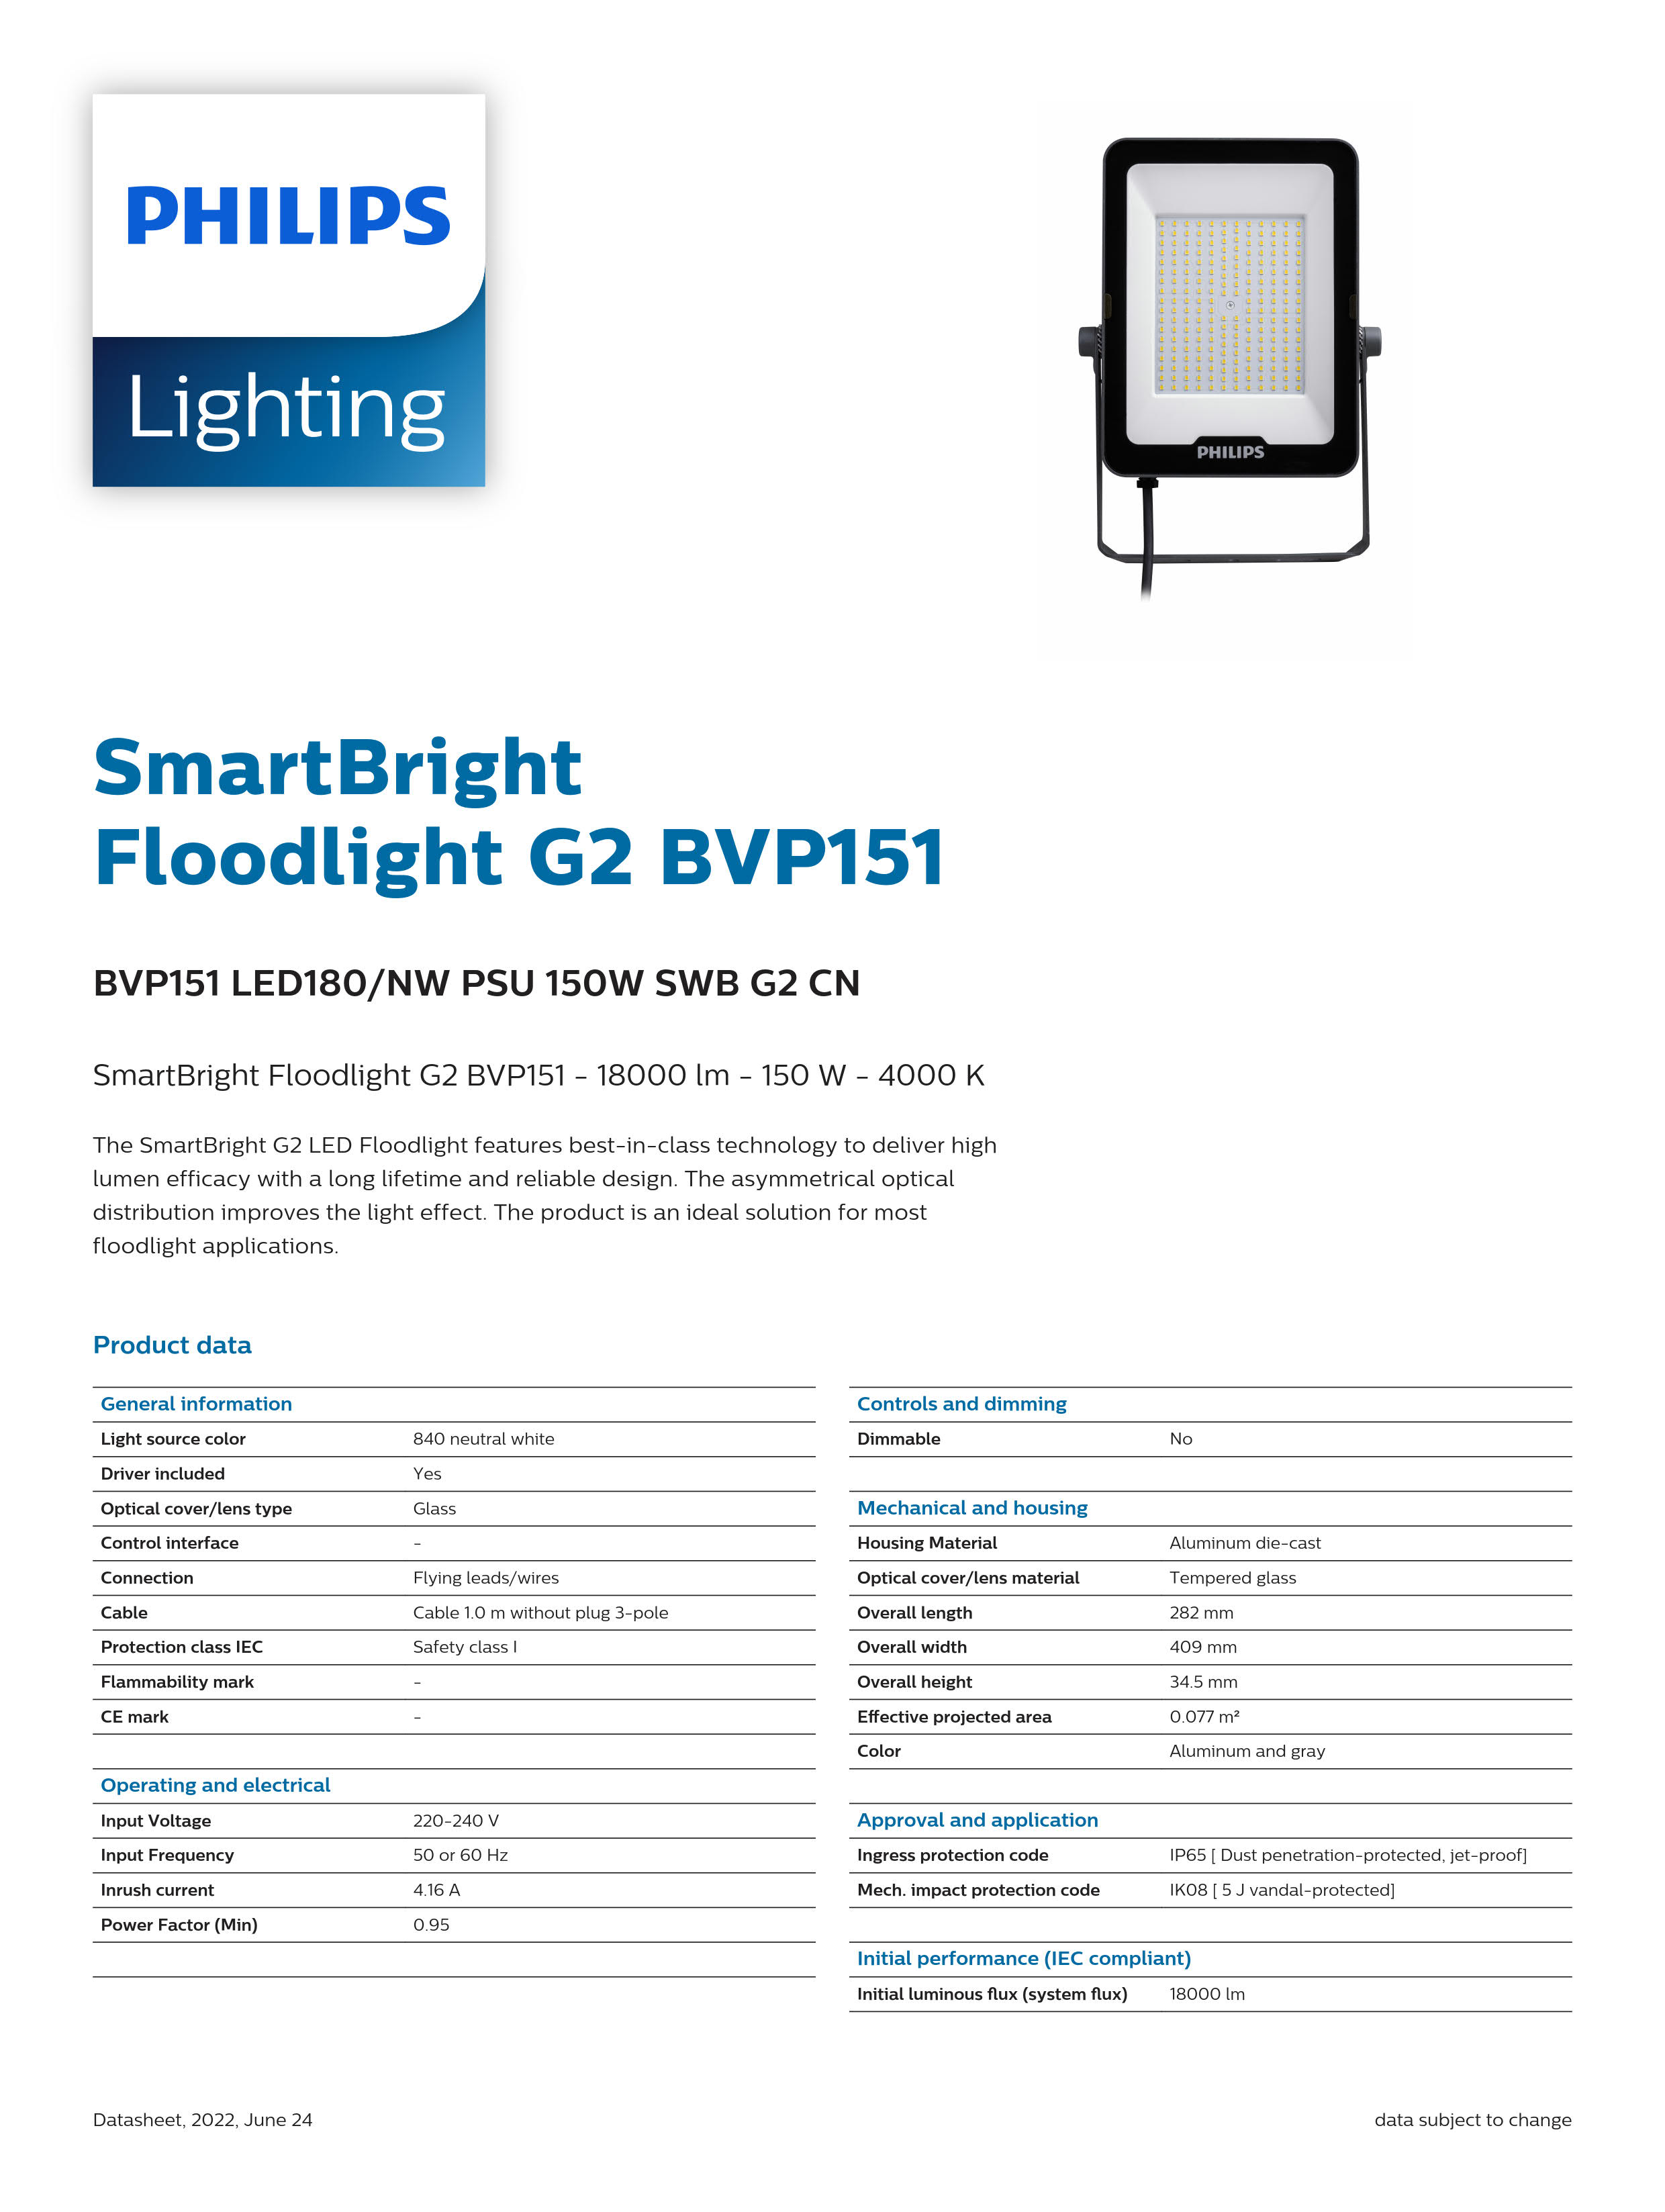 PHILIPS LED Flood light BVP151 LED180/NW PSU 150W SWB G2 CN 911401857083